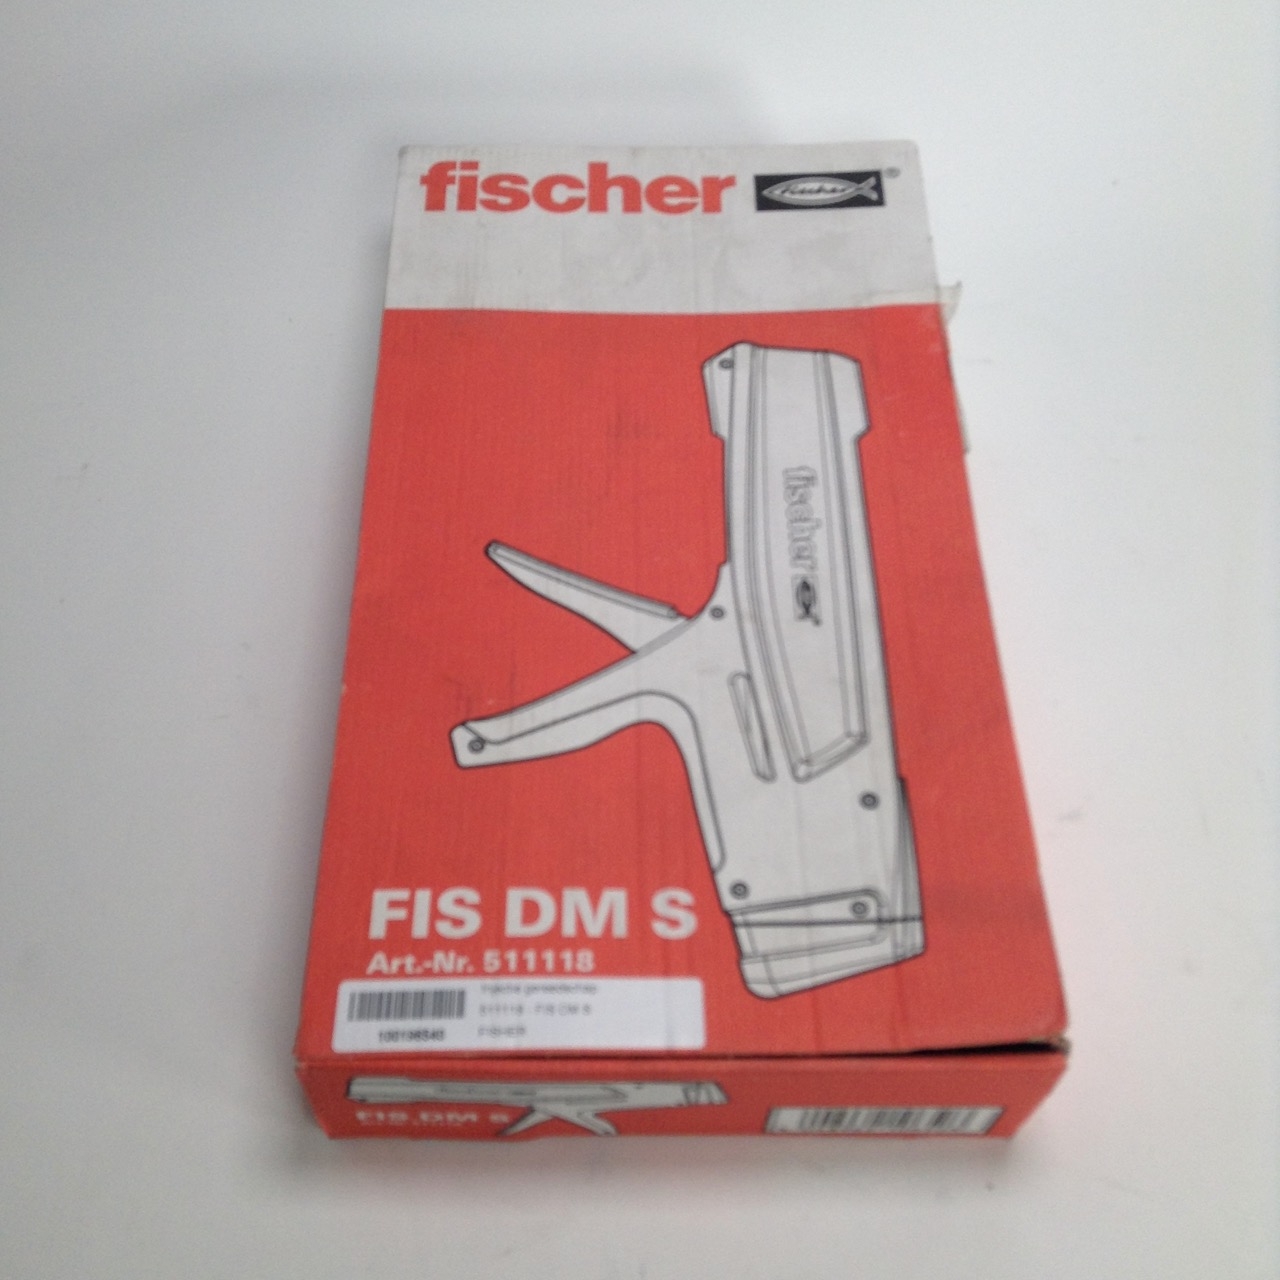 Fischer 511118 Auspresspistole Auspressgerät FIS DM S New NFP